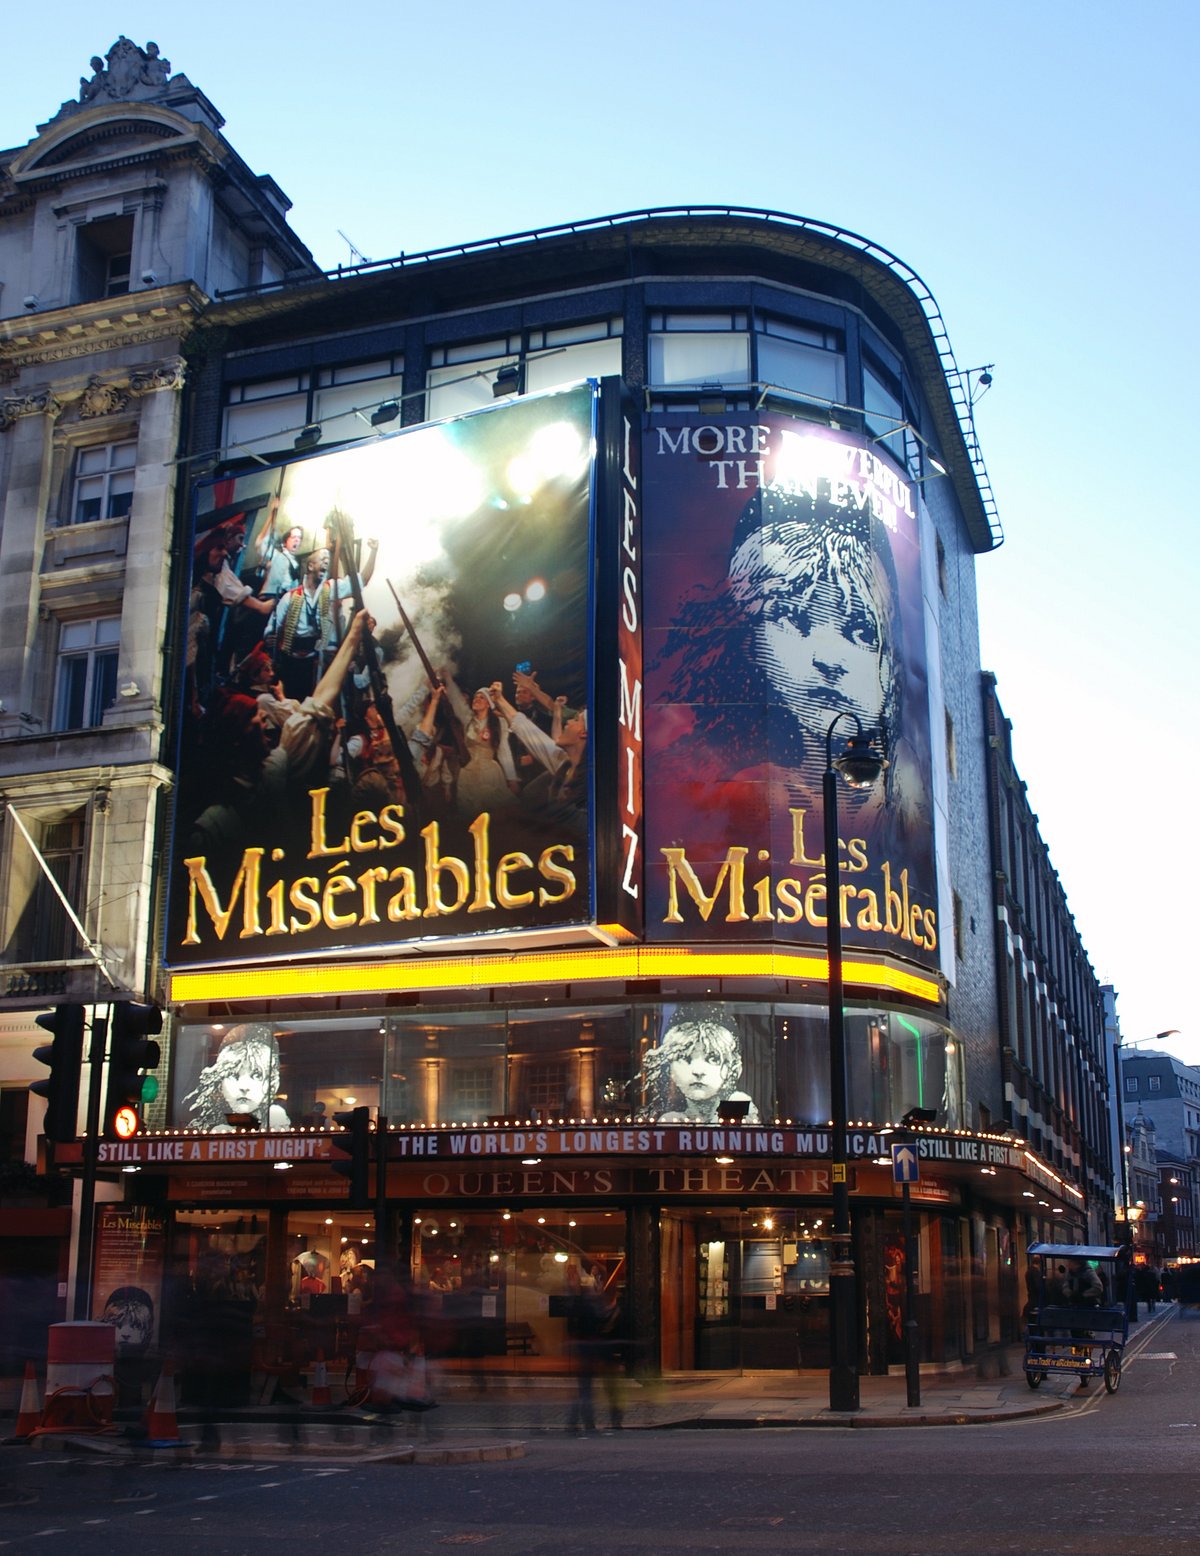 Tickets for Les Misérables musical